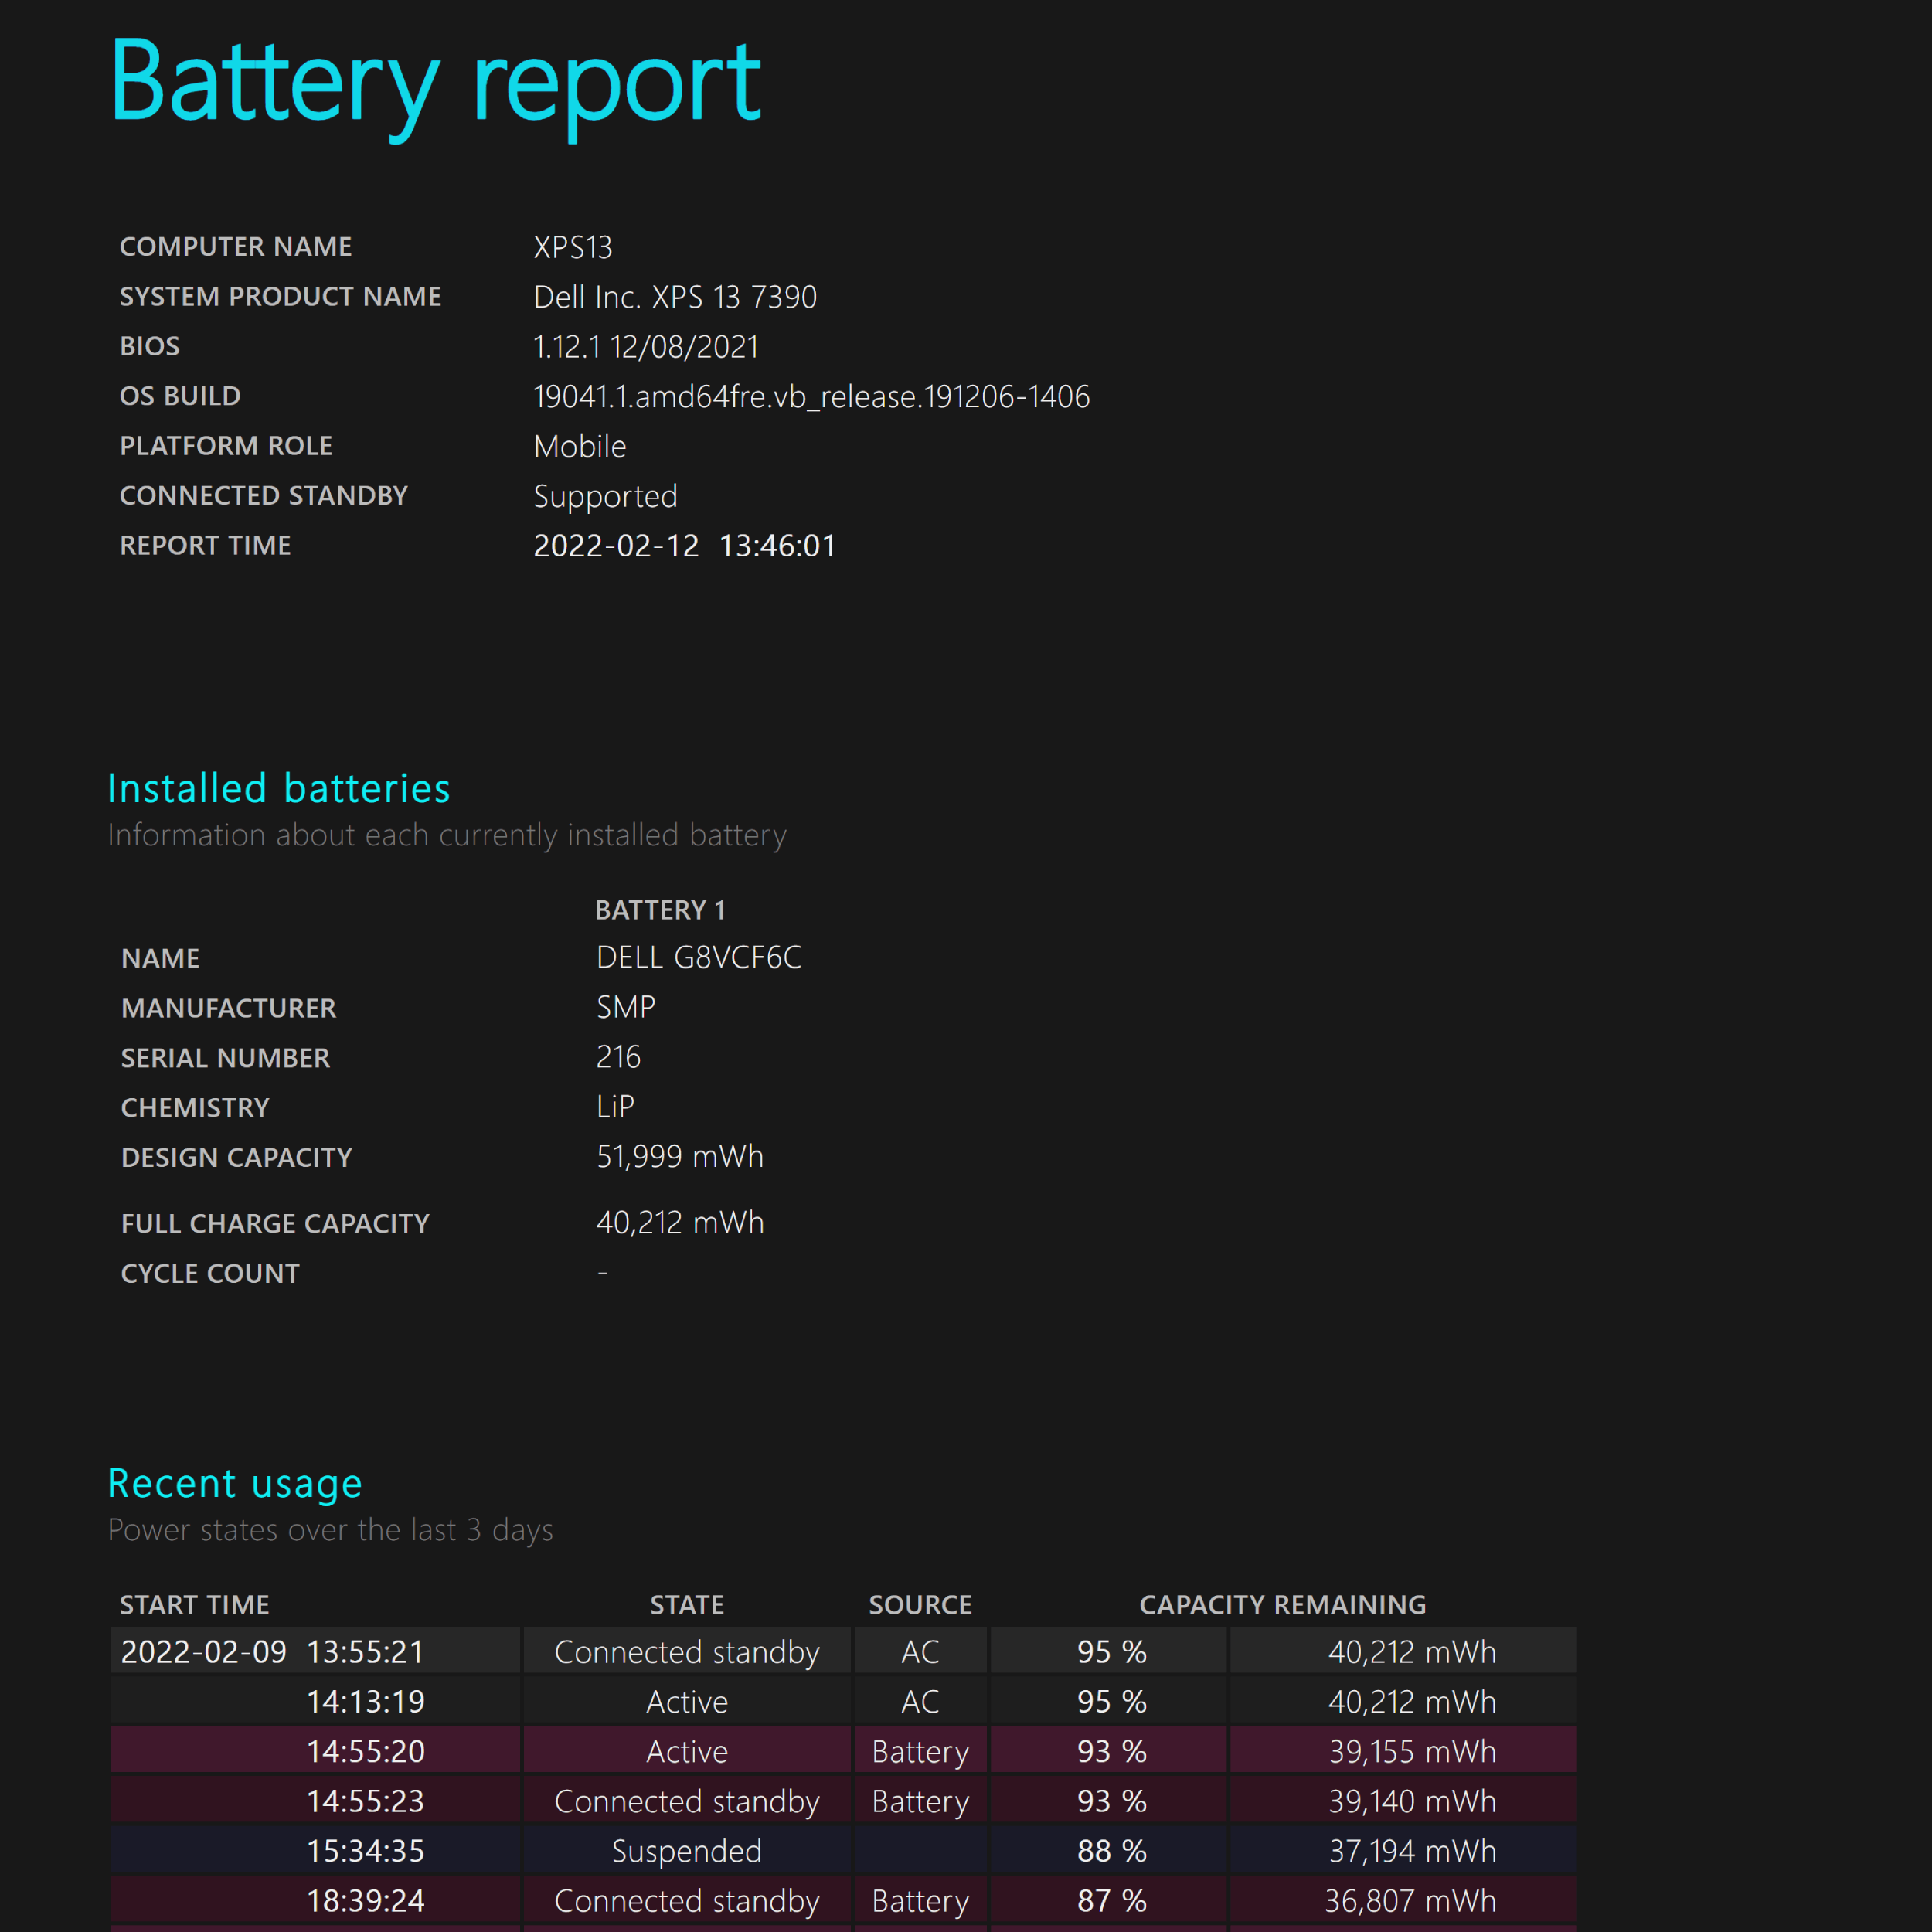 Windows Battery Report Summary